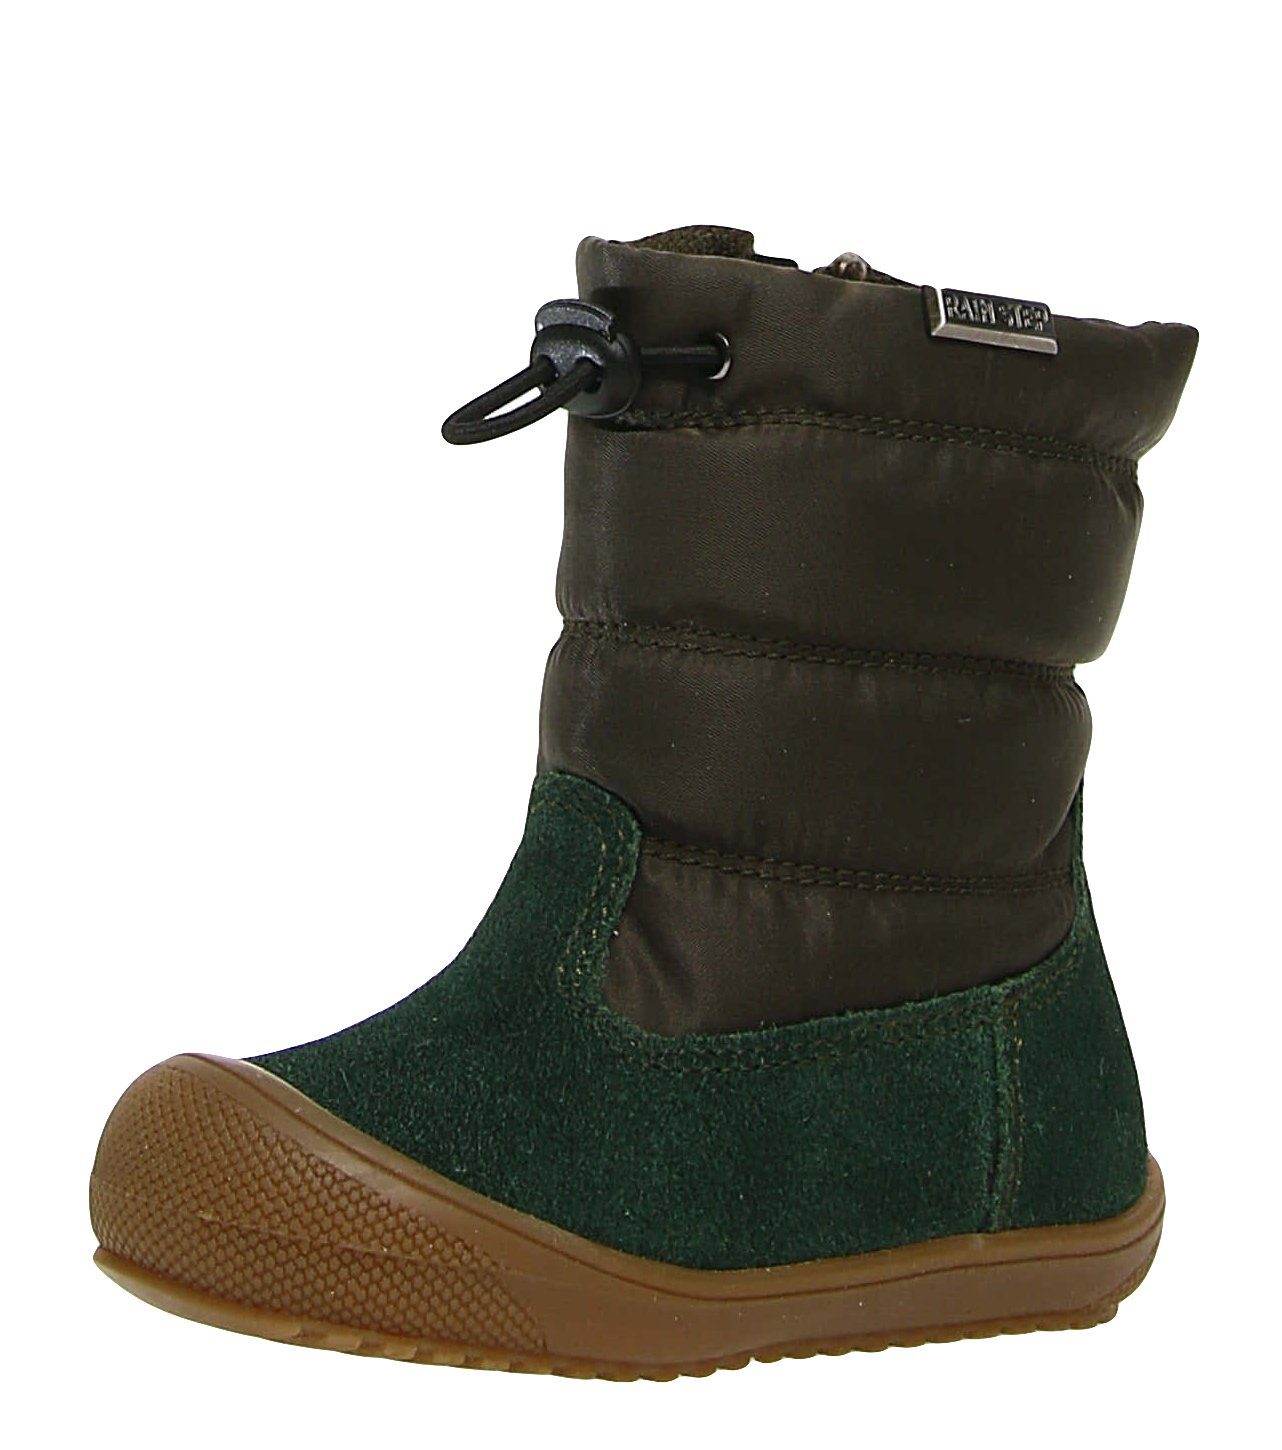 Naturino »Naturino Stiefel Hochalpen erste Schuhe Wollfutter Wasserdicht  Grün« Schnürstiefelette online kaufen | OTTO